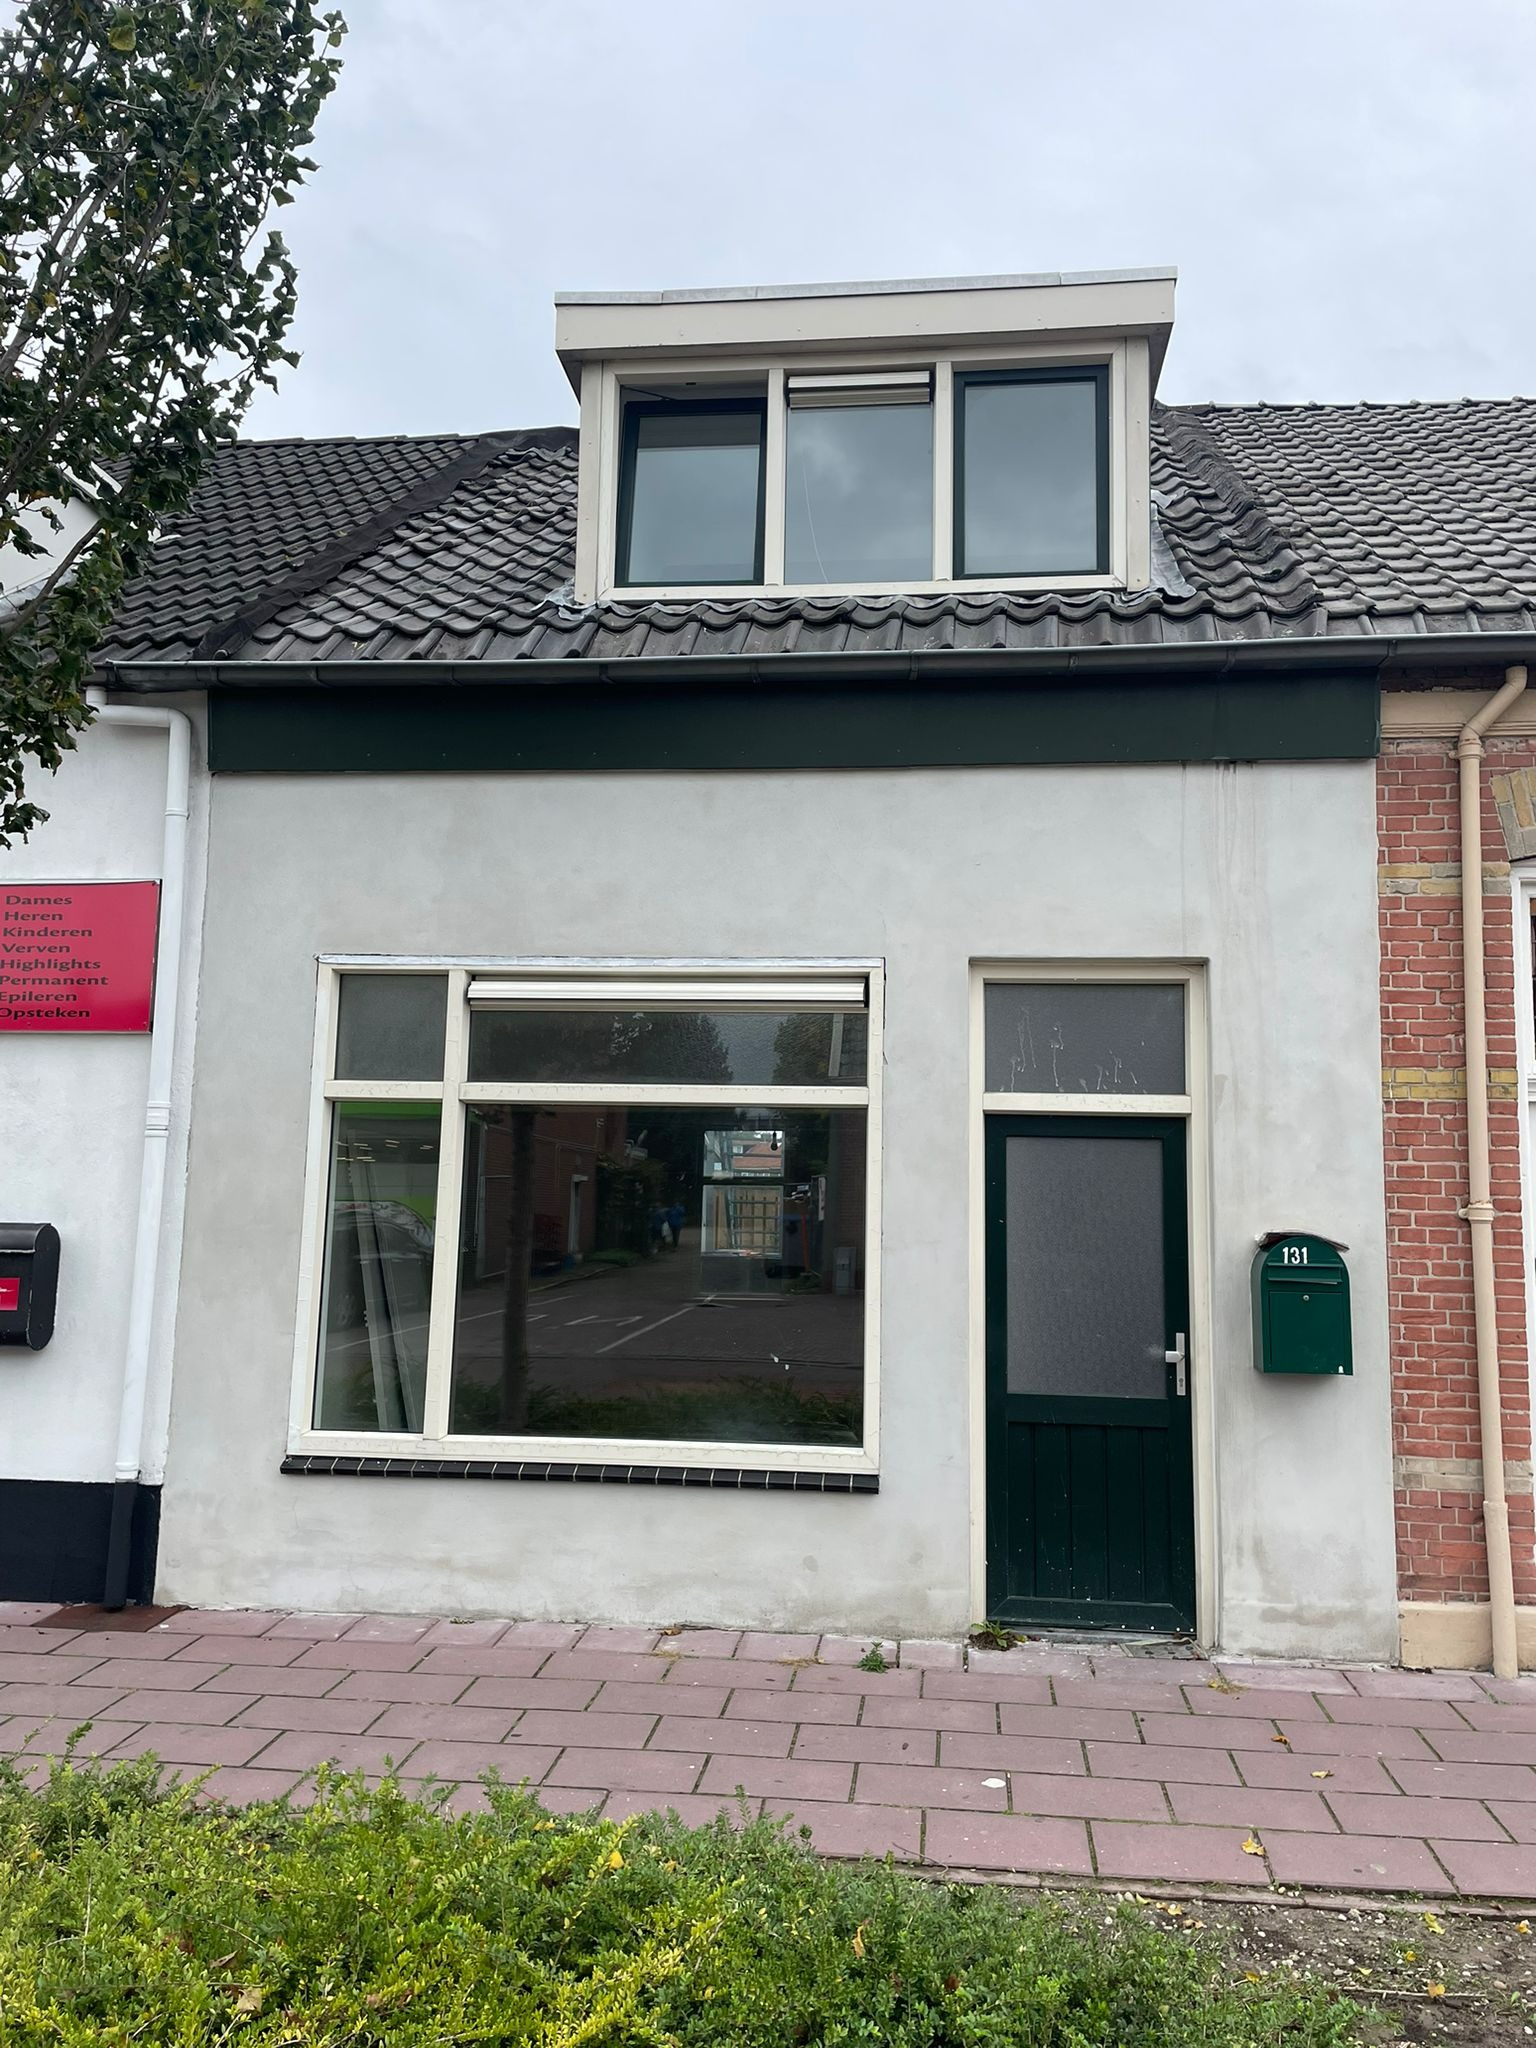 Woning / appartement - Almelo - Nieuwstraat 131